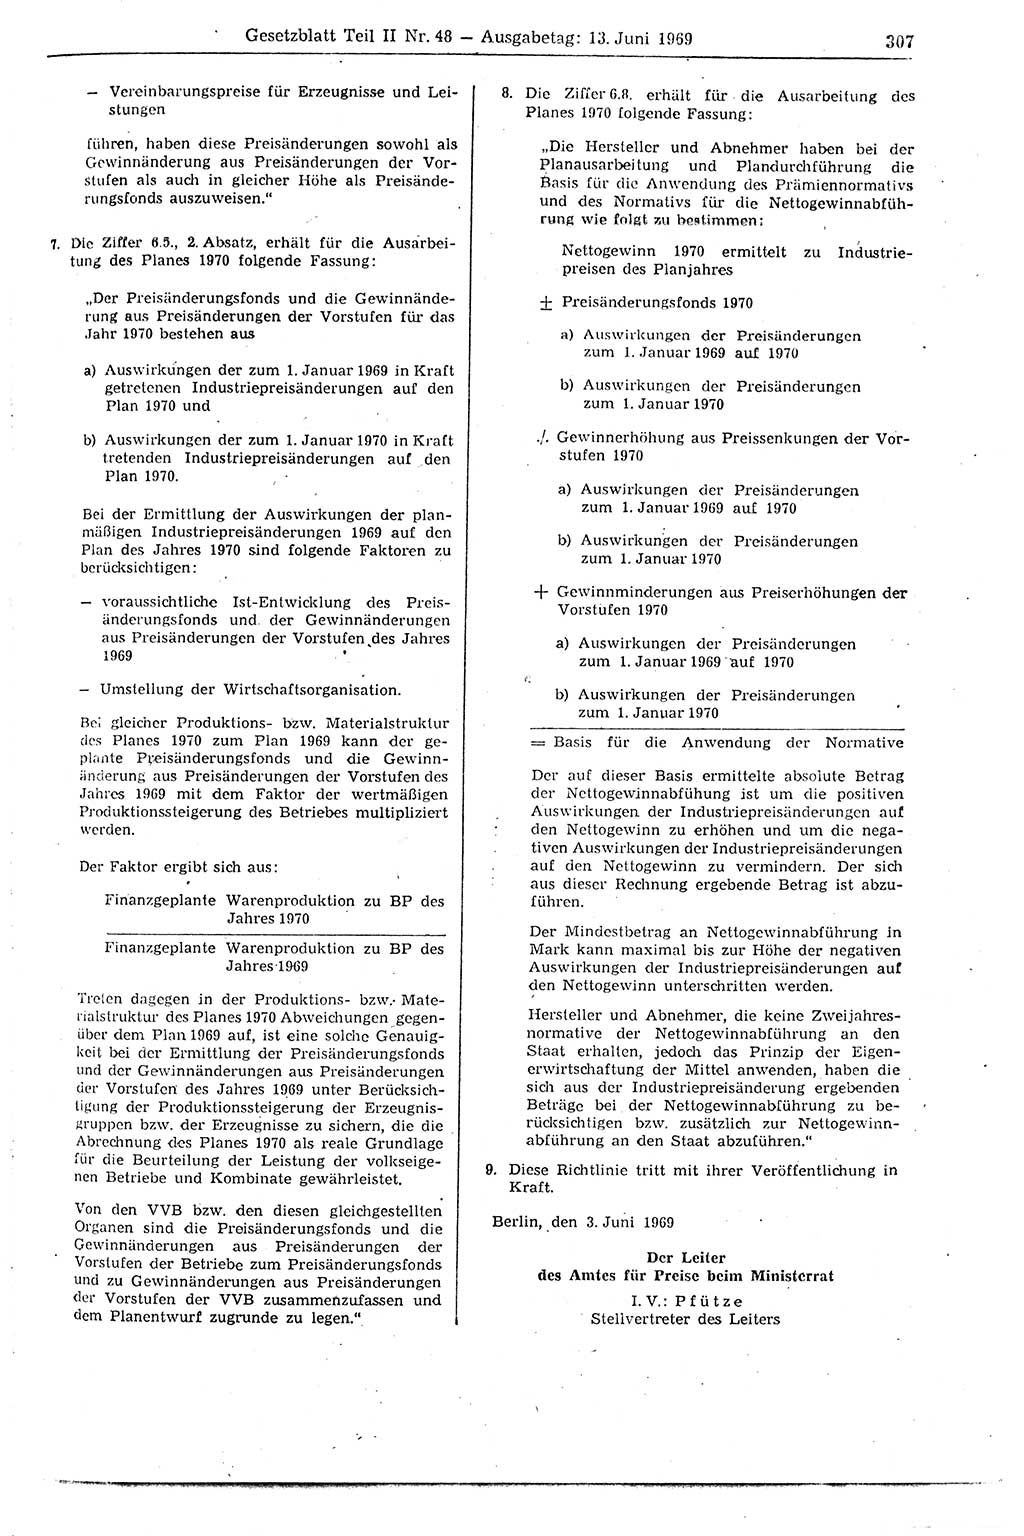 Gesetzblatt (GBl.) der Deutschen Demokratischen Republik (DDR) Teil ⅠⅠ 1969, Seite 307 (GBl. DDR ⅠⅠ 1969, S. 307)